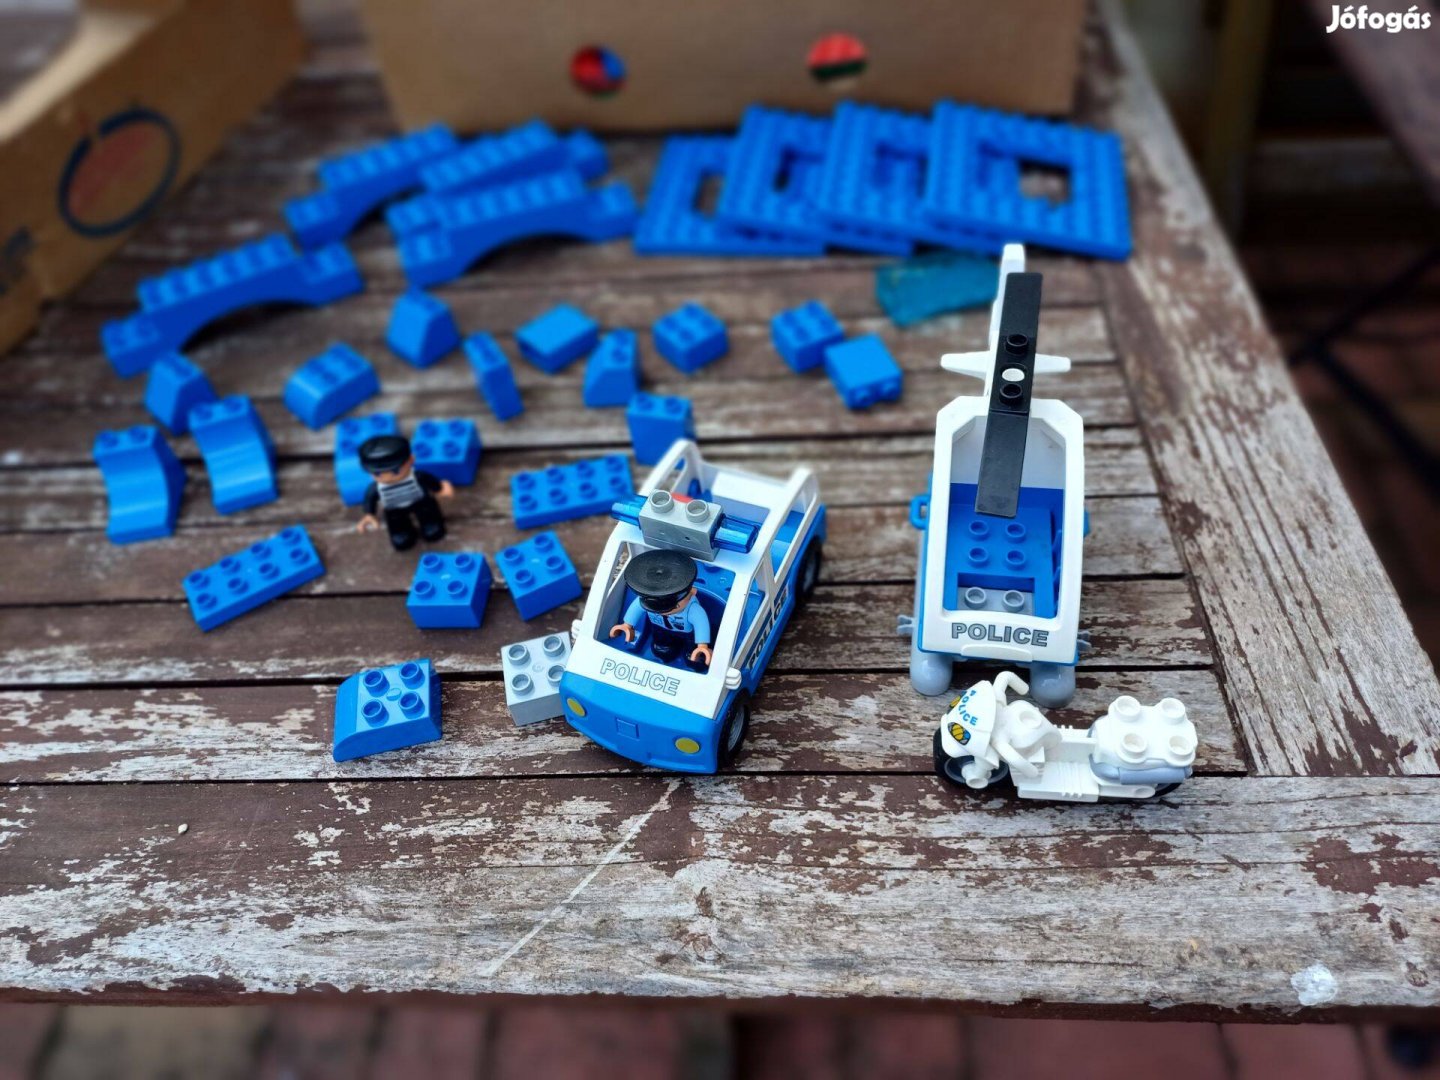 Lego Duplo rendőrségi összeállítás